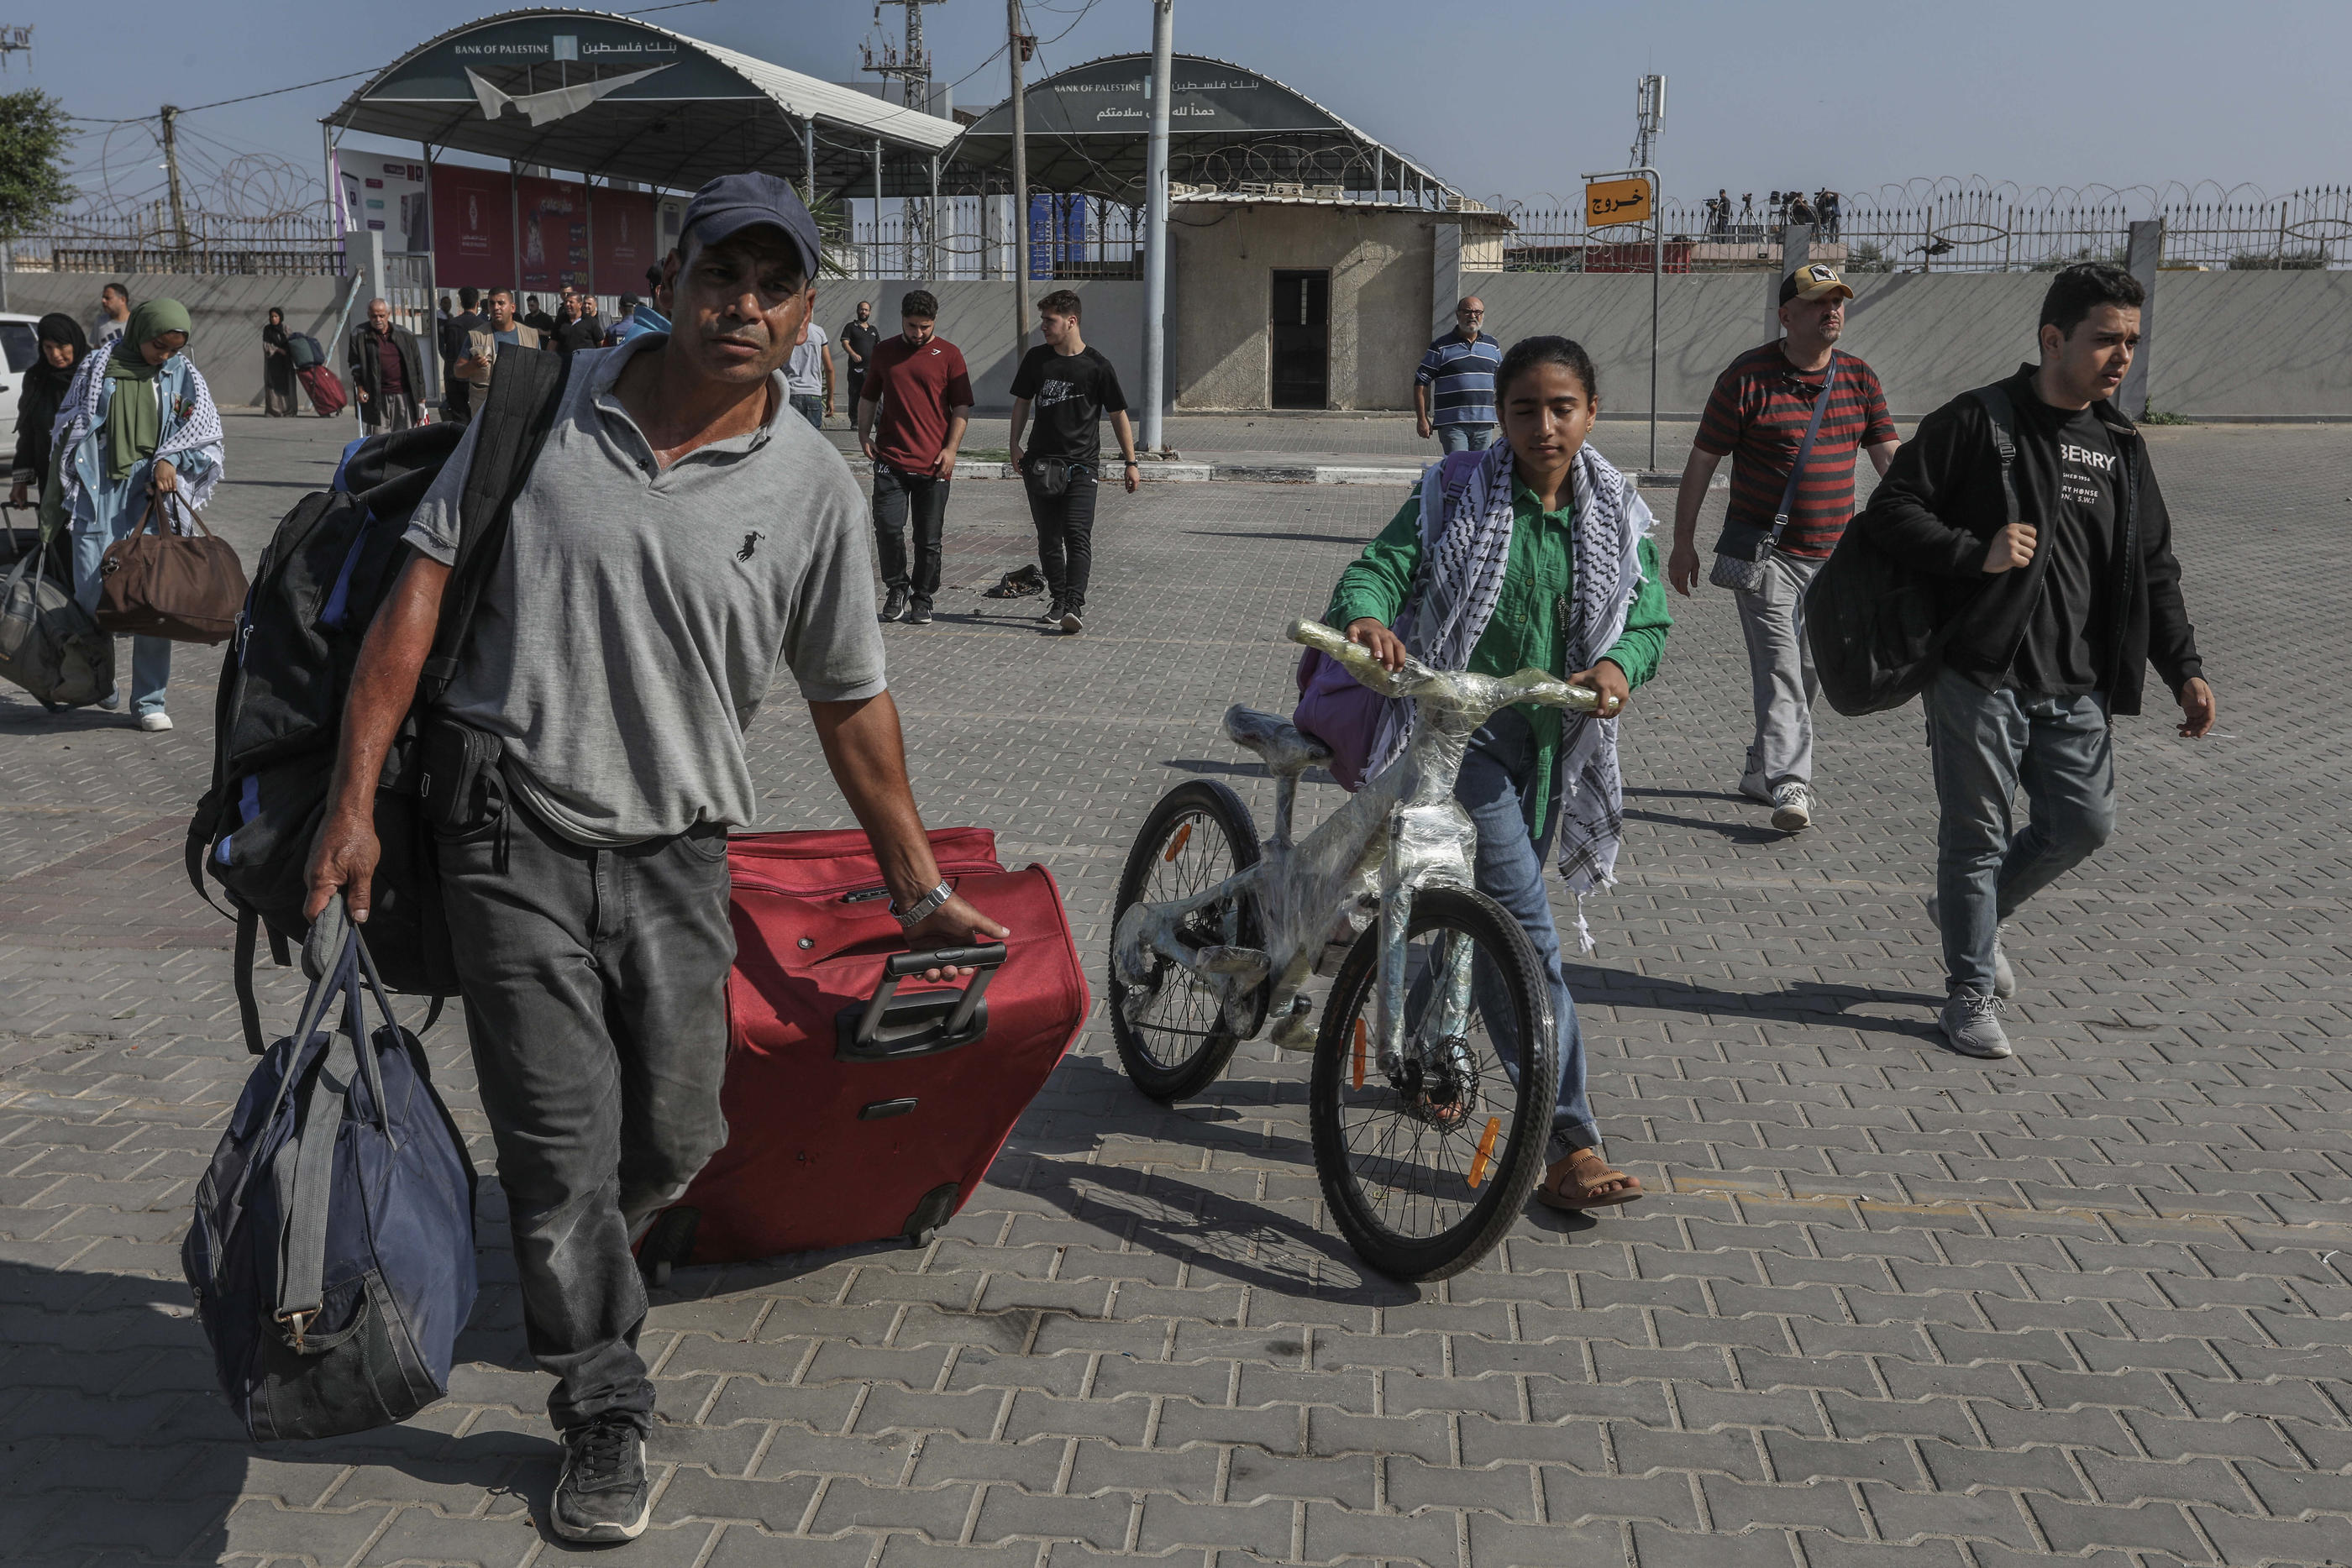 Les premiers ressortissants étrangers ou binationaux ont déjà pu quitter la bande de Gaza mercredi 1er novembre, via le poste-frontière de Rafah. PictureAlliance / Icon Sport